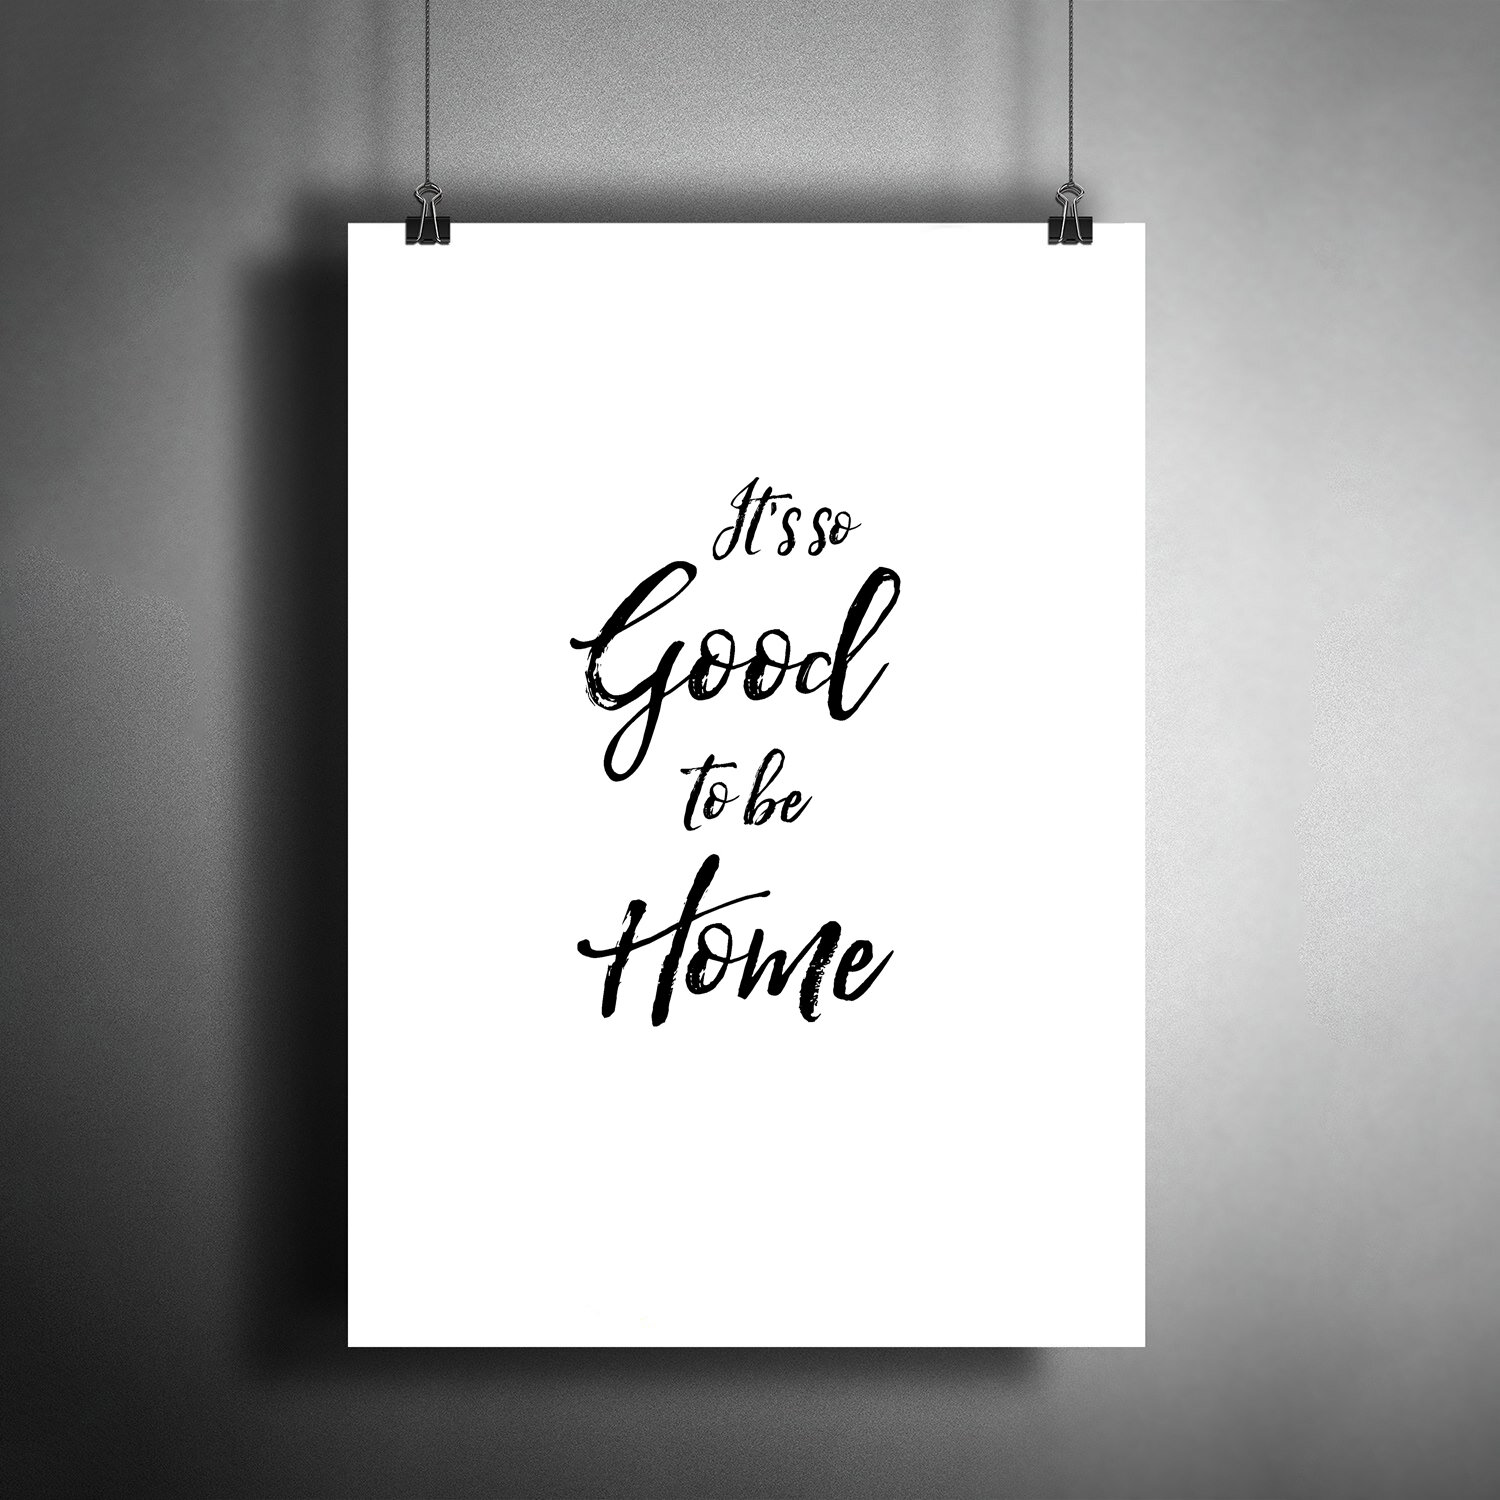 Постер плакат для интерьера Как прекрасно быть дома. It's so Good to be Home. Подарок на новоселье/ Декор дома офиса комнаты A3 (297 x 420 мм)